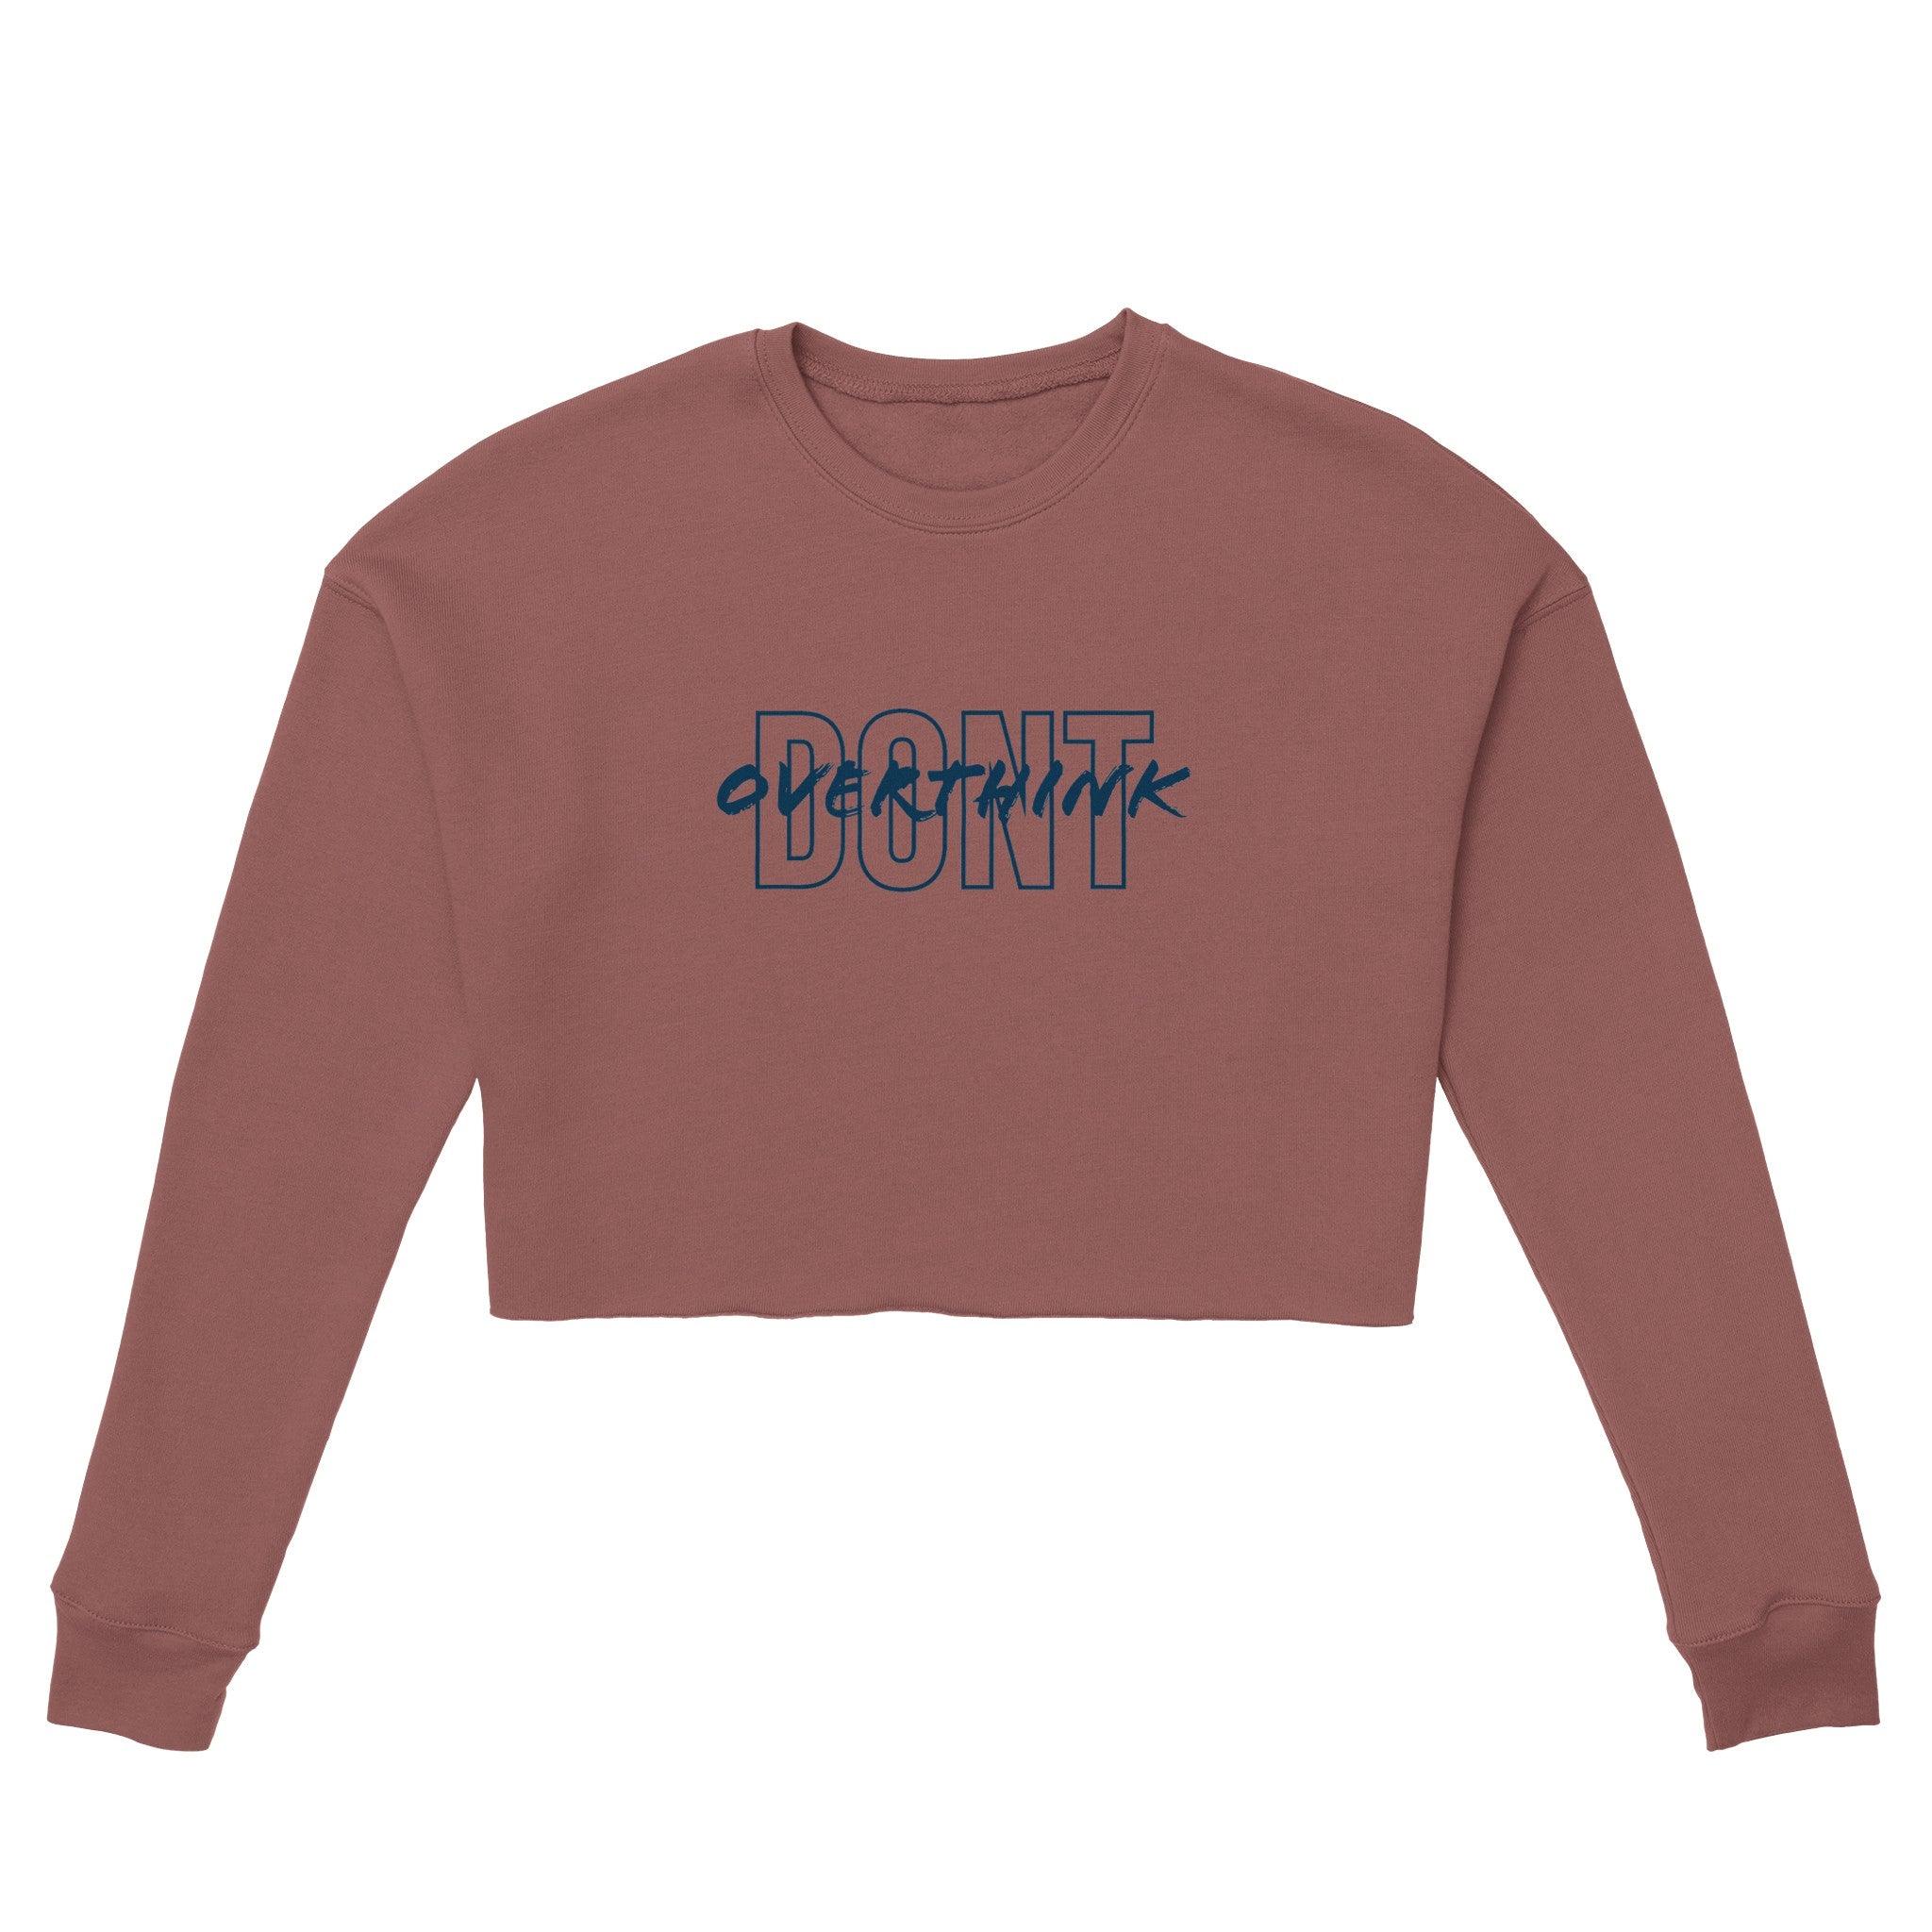 'Don't overthink' Cropped Sweatshirt - POMA